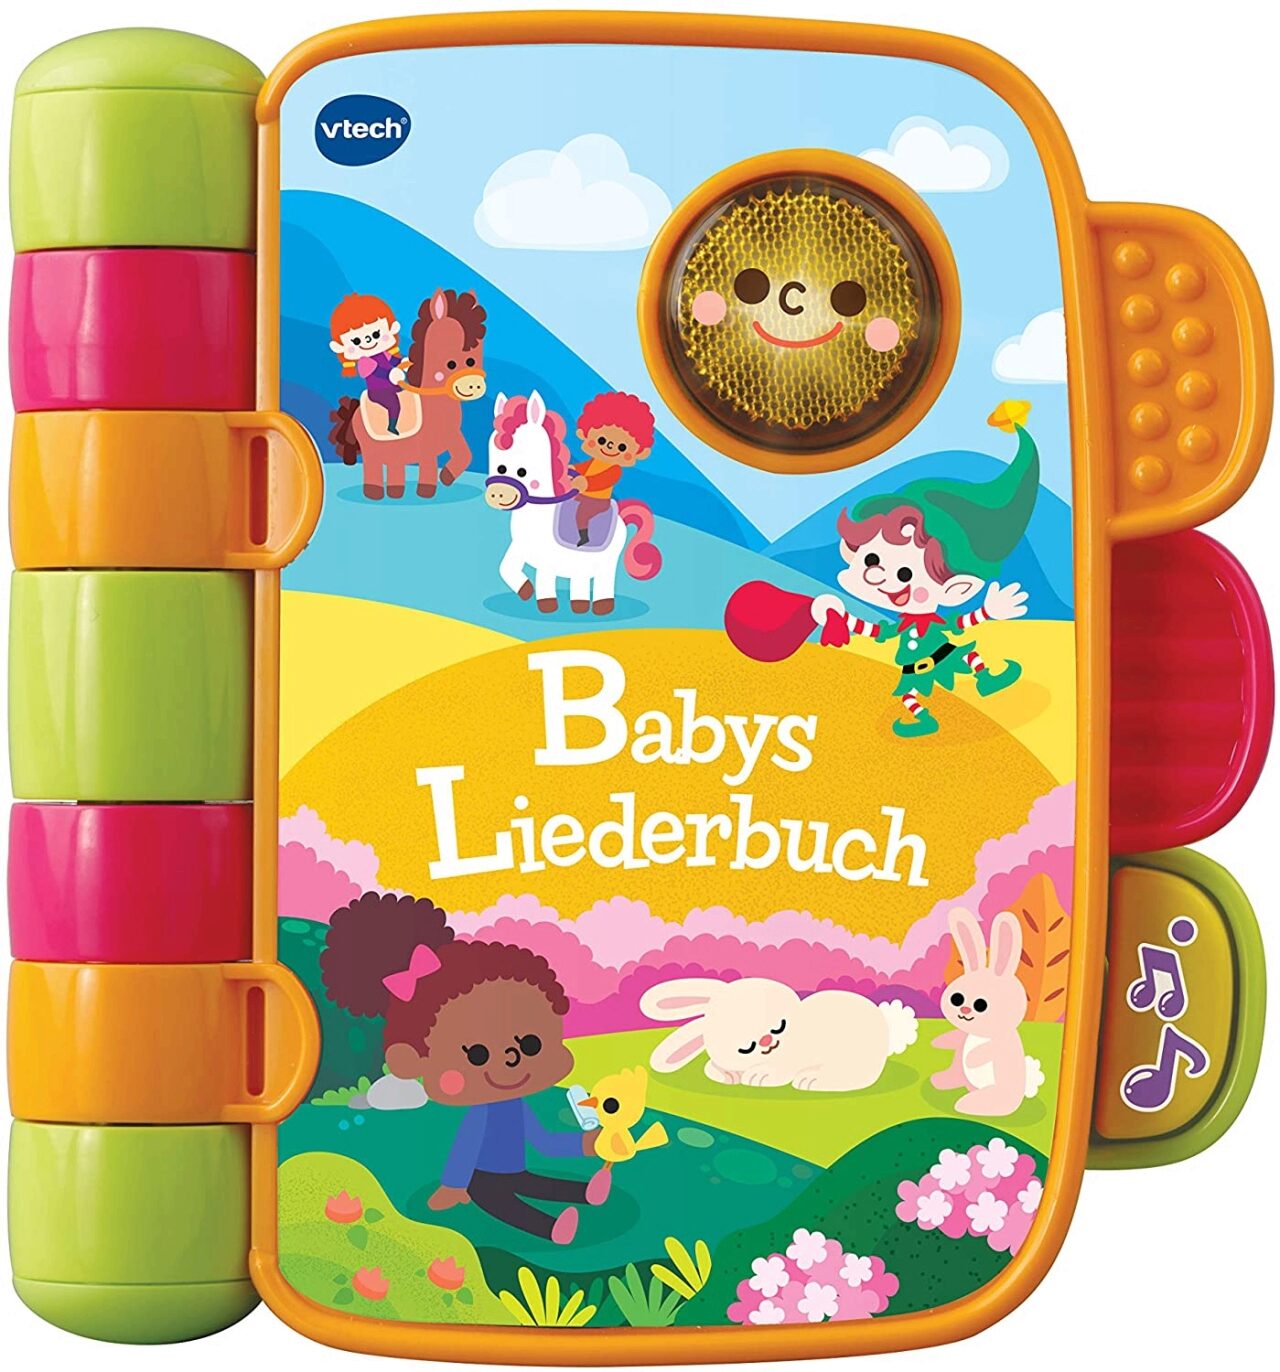 Babys Liederbuch VTECH 80-138364